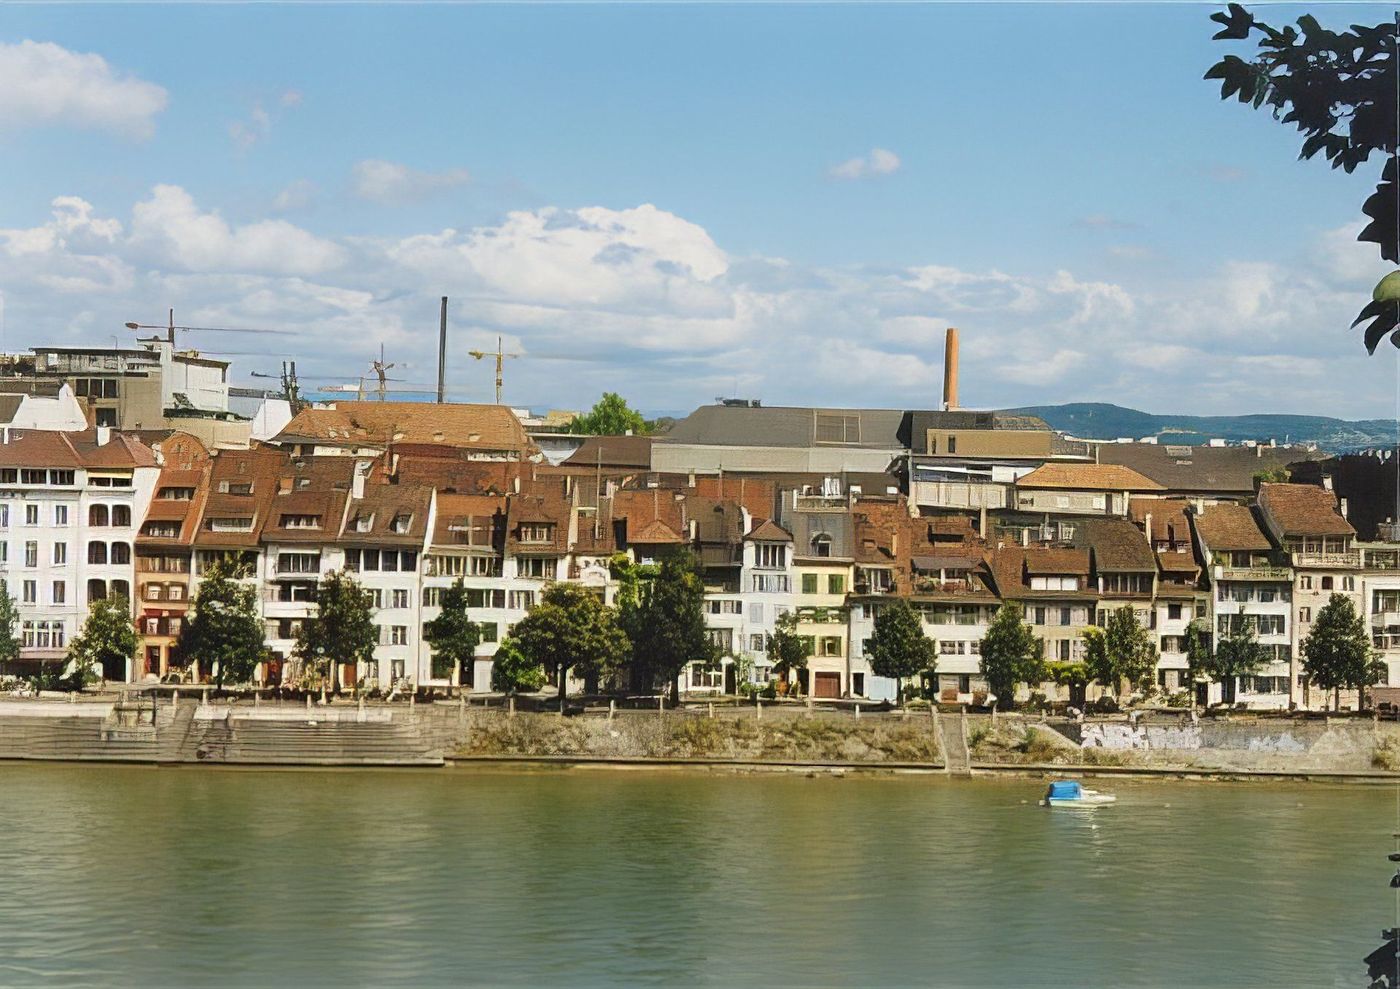 Bâle (Basel)